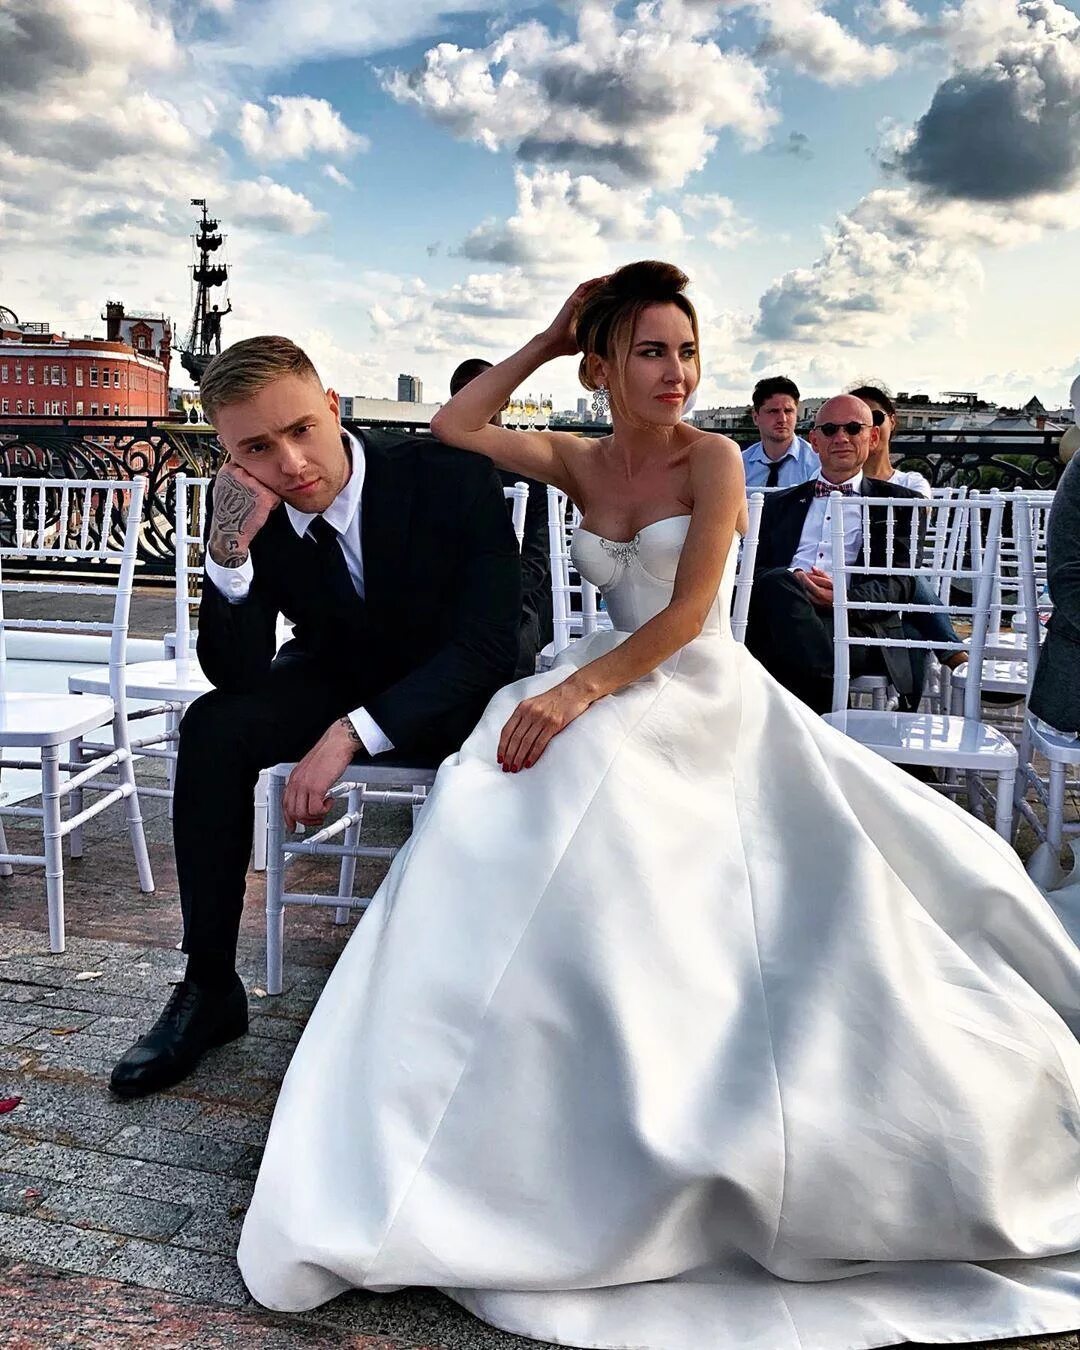 Недавно был на свадьбе. Свадьба Егора Крида. Свадьба Егора Крида 2020. Жена Егора Крида 2020.